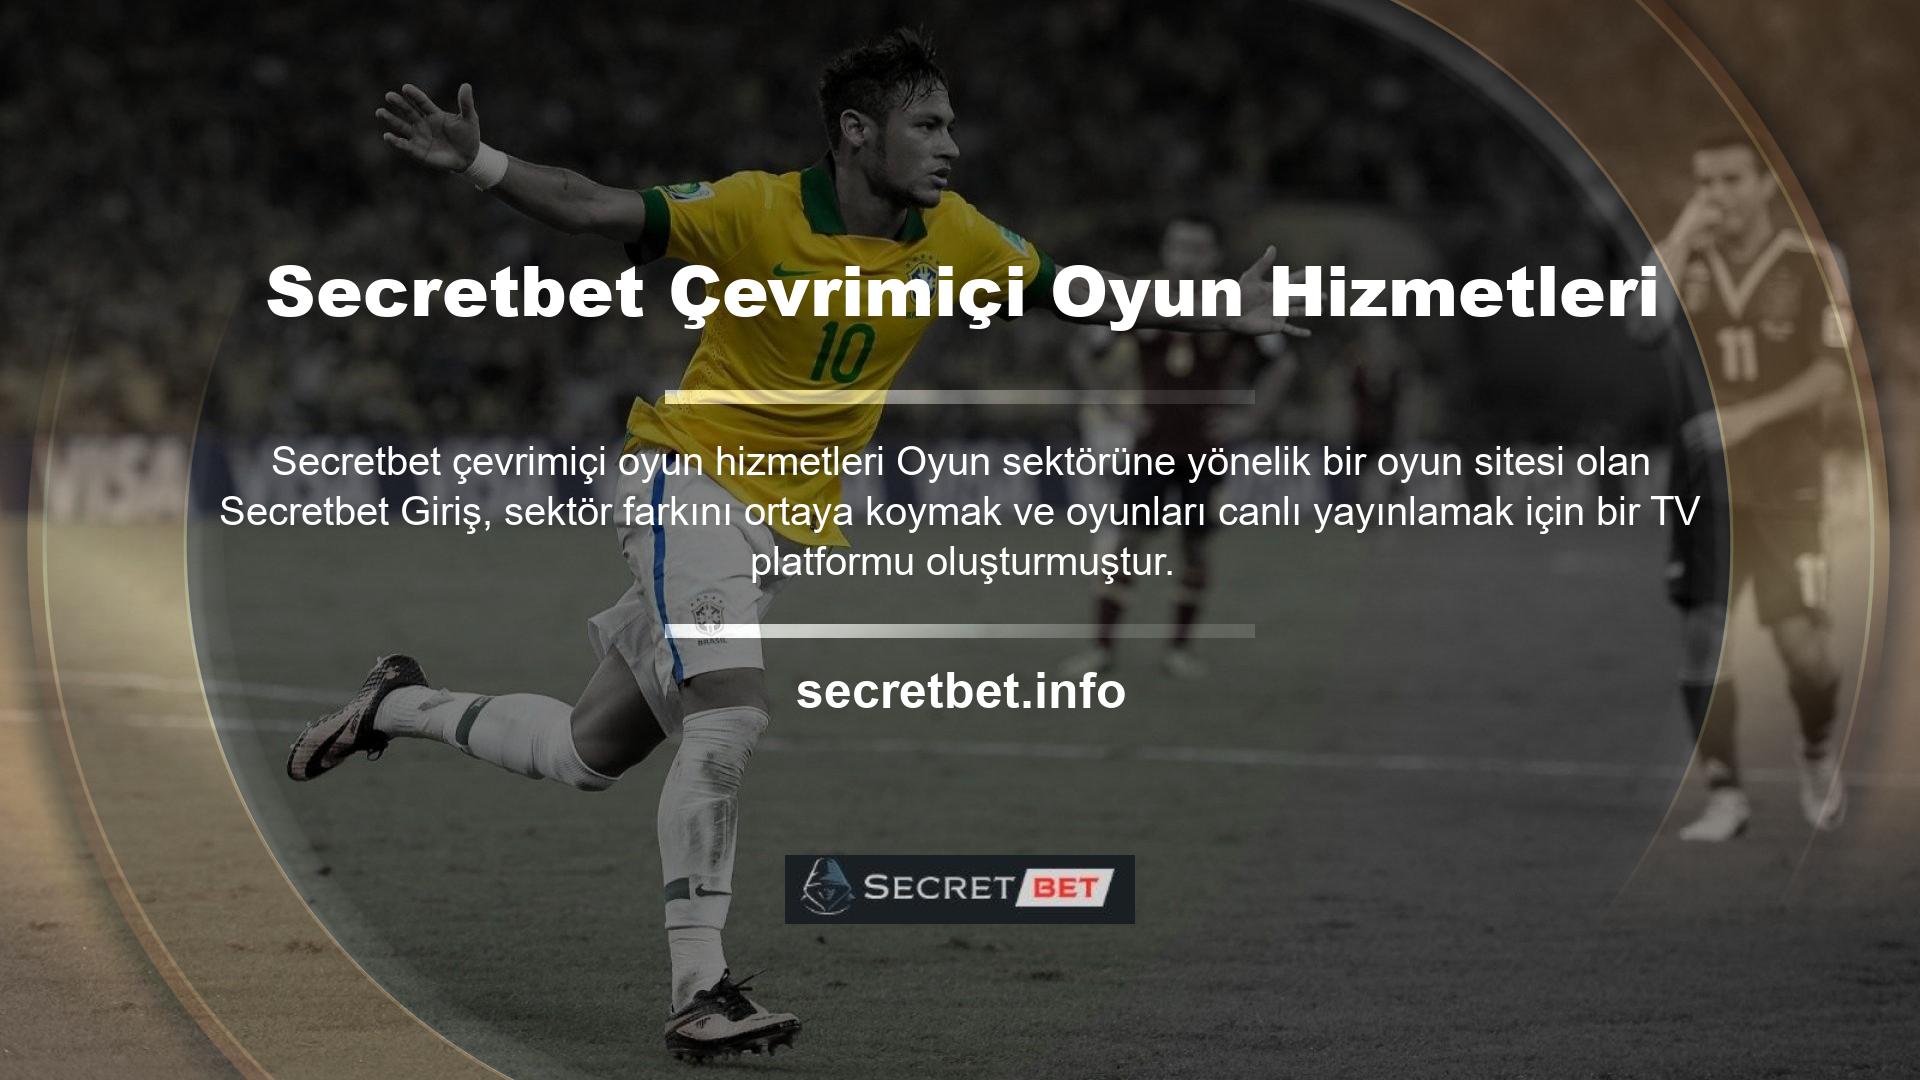 Secretbet Giriş TV isimli servis, bahis kategorileri de dahil olmak üzere tüm spor karşılaşmalarının canlı yayınını sunuyor